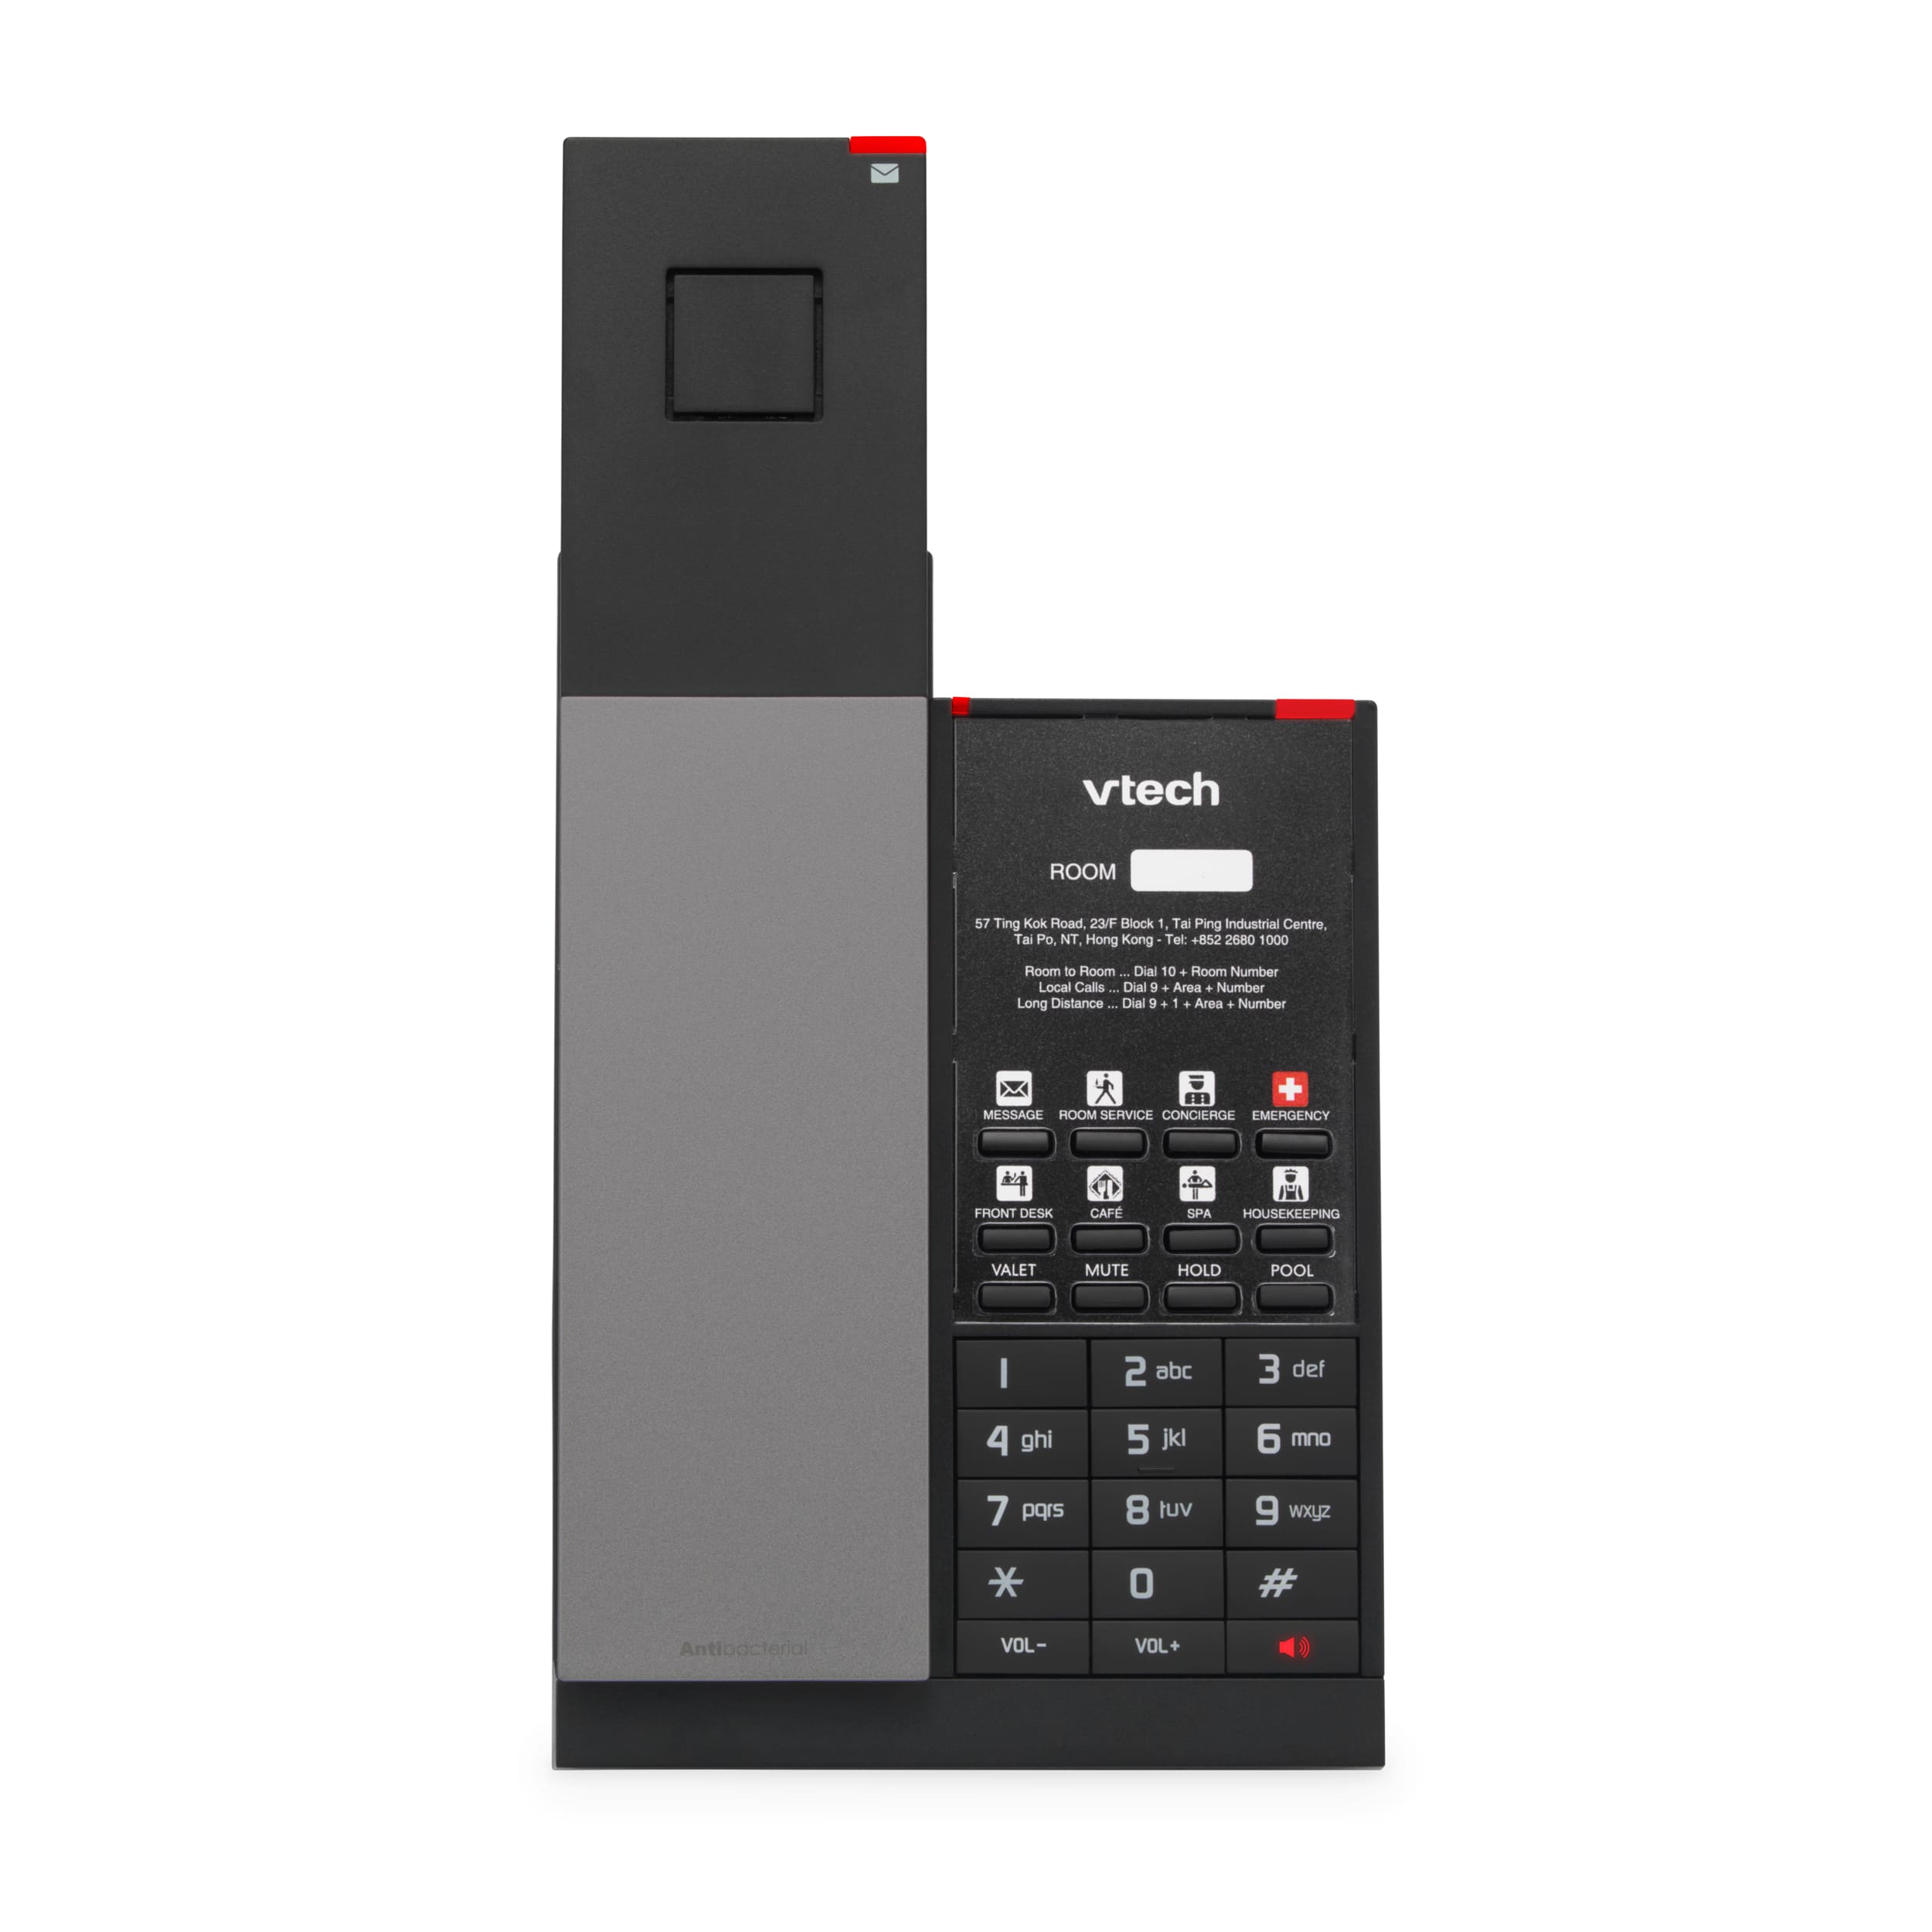 Vtech téléphone sans fil (1 unité, noir) - cordless phone (1 unit, black), Delivery Near You